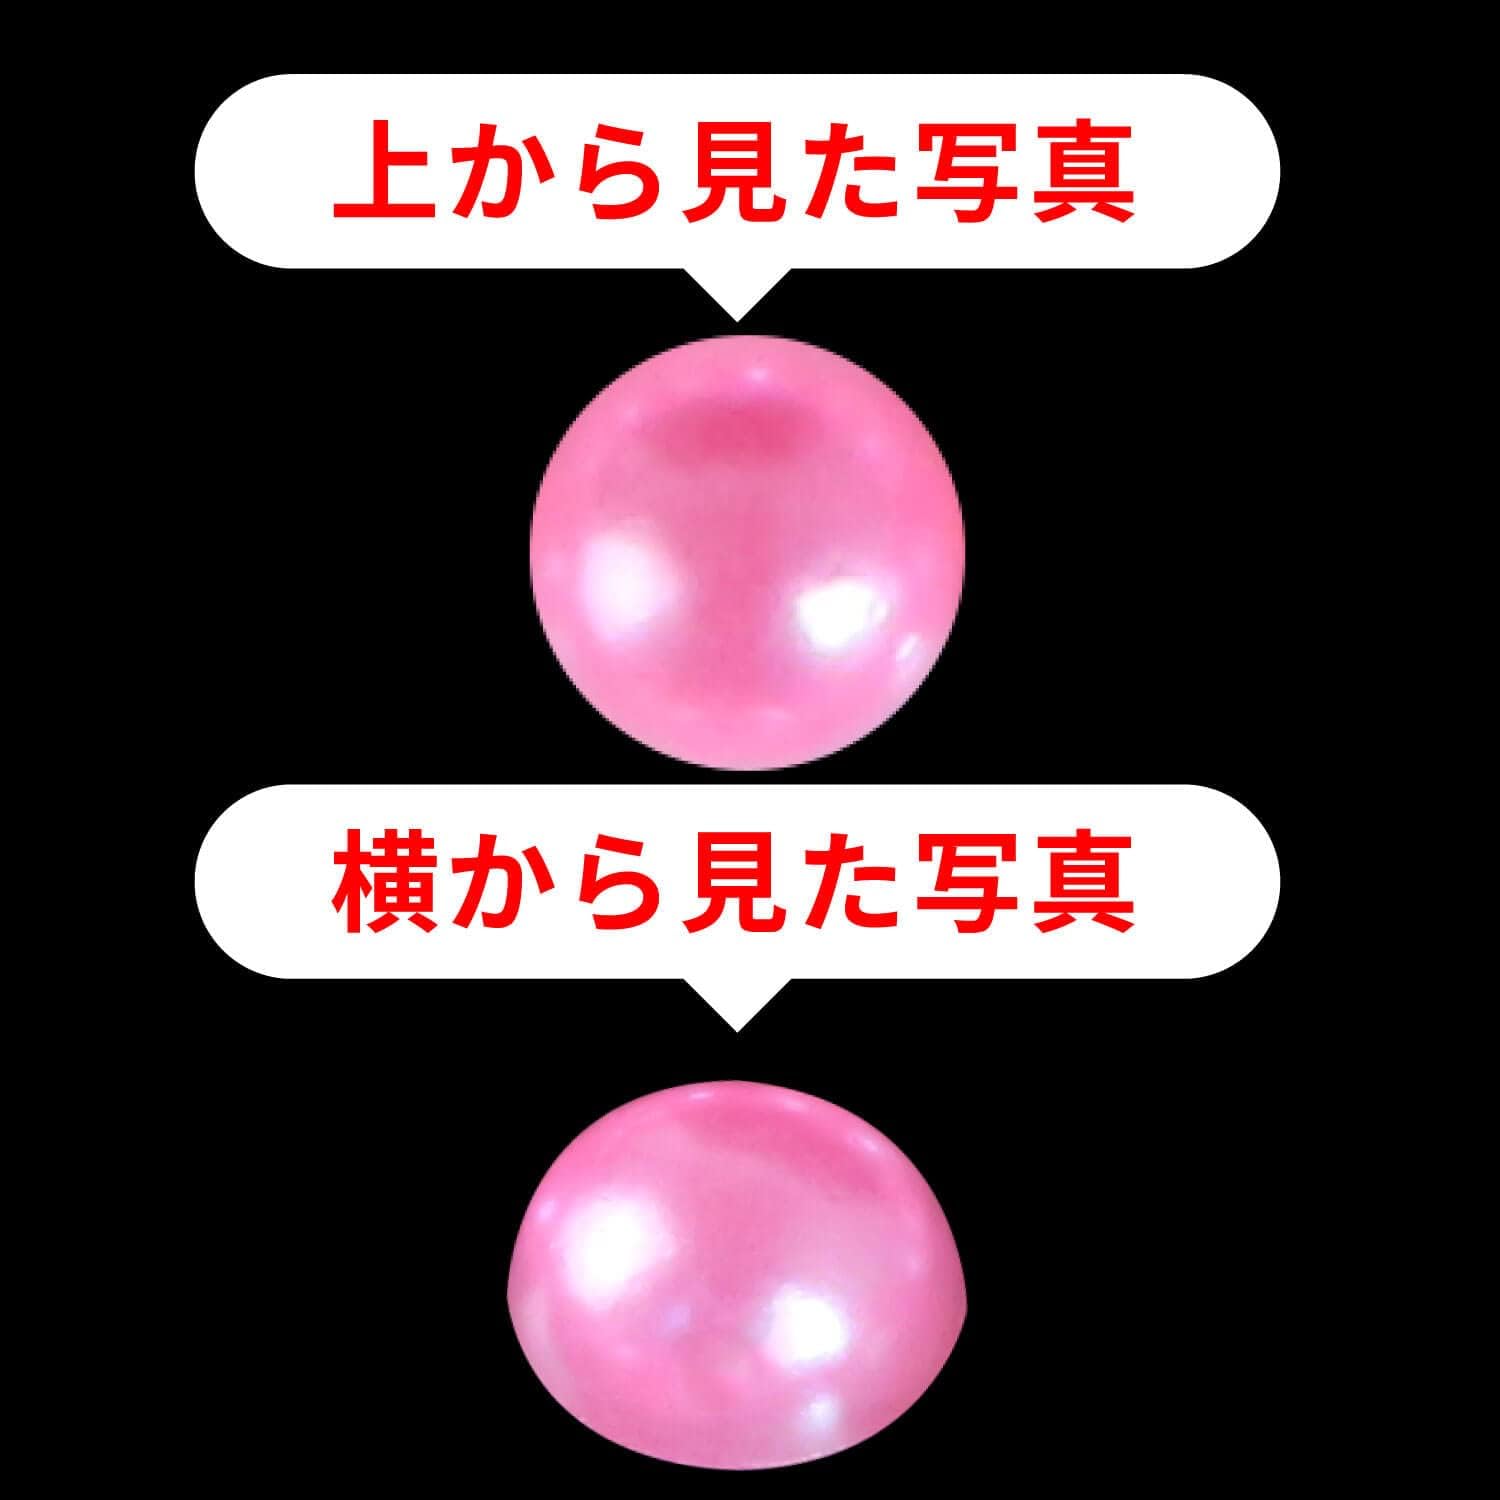 110 ラインストーンシール(デコシール) パールタイプ 6ミリ【ピンク】1 ...